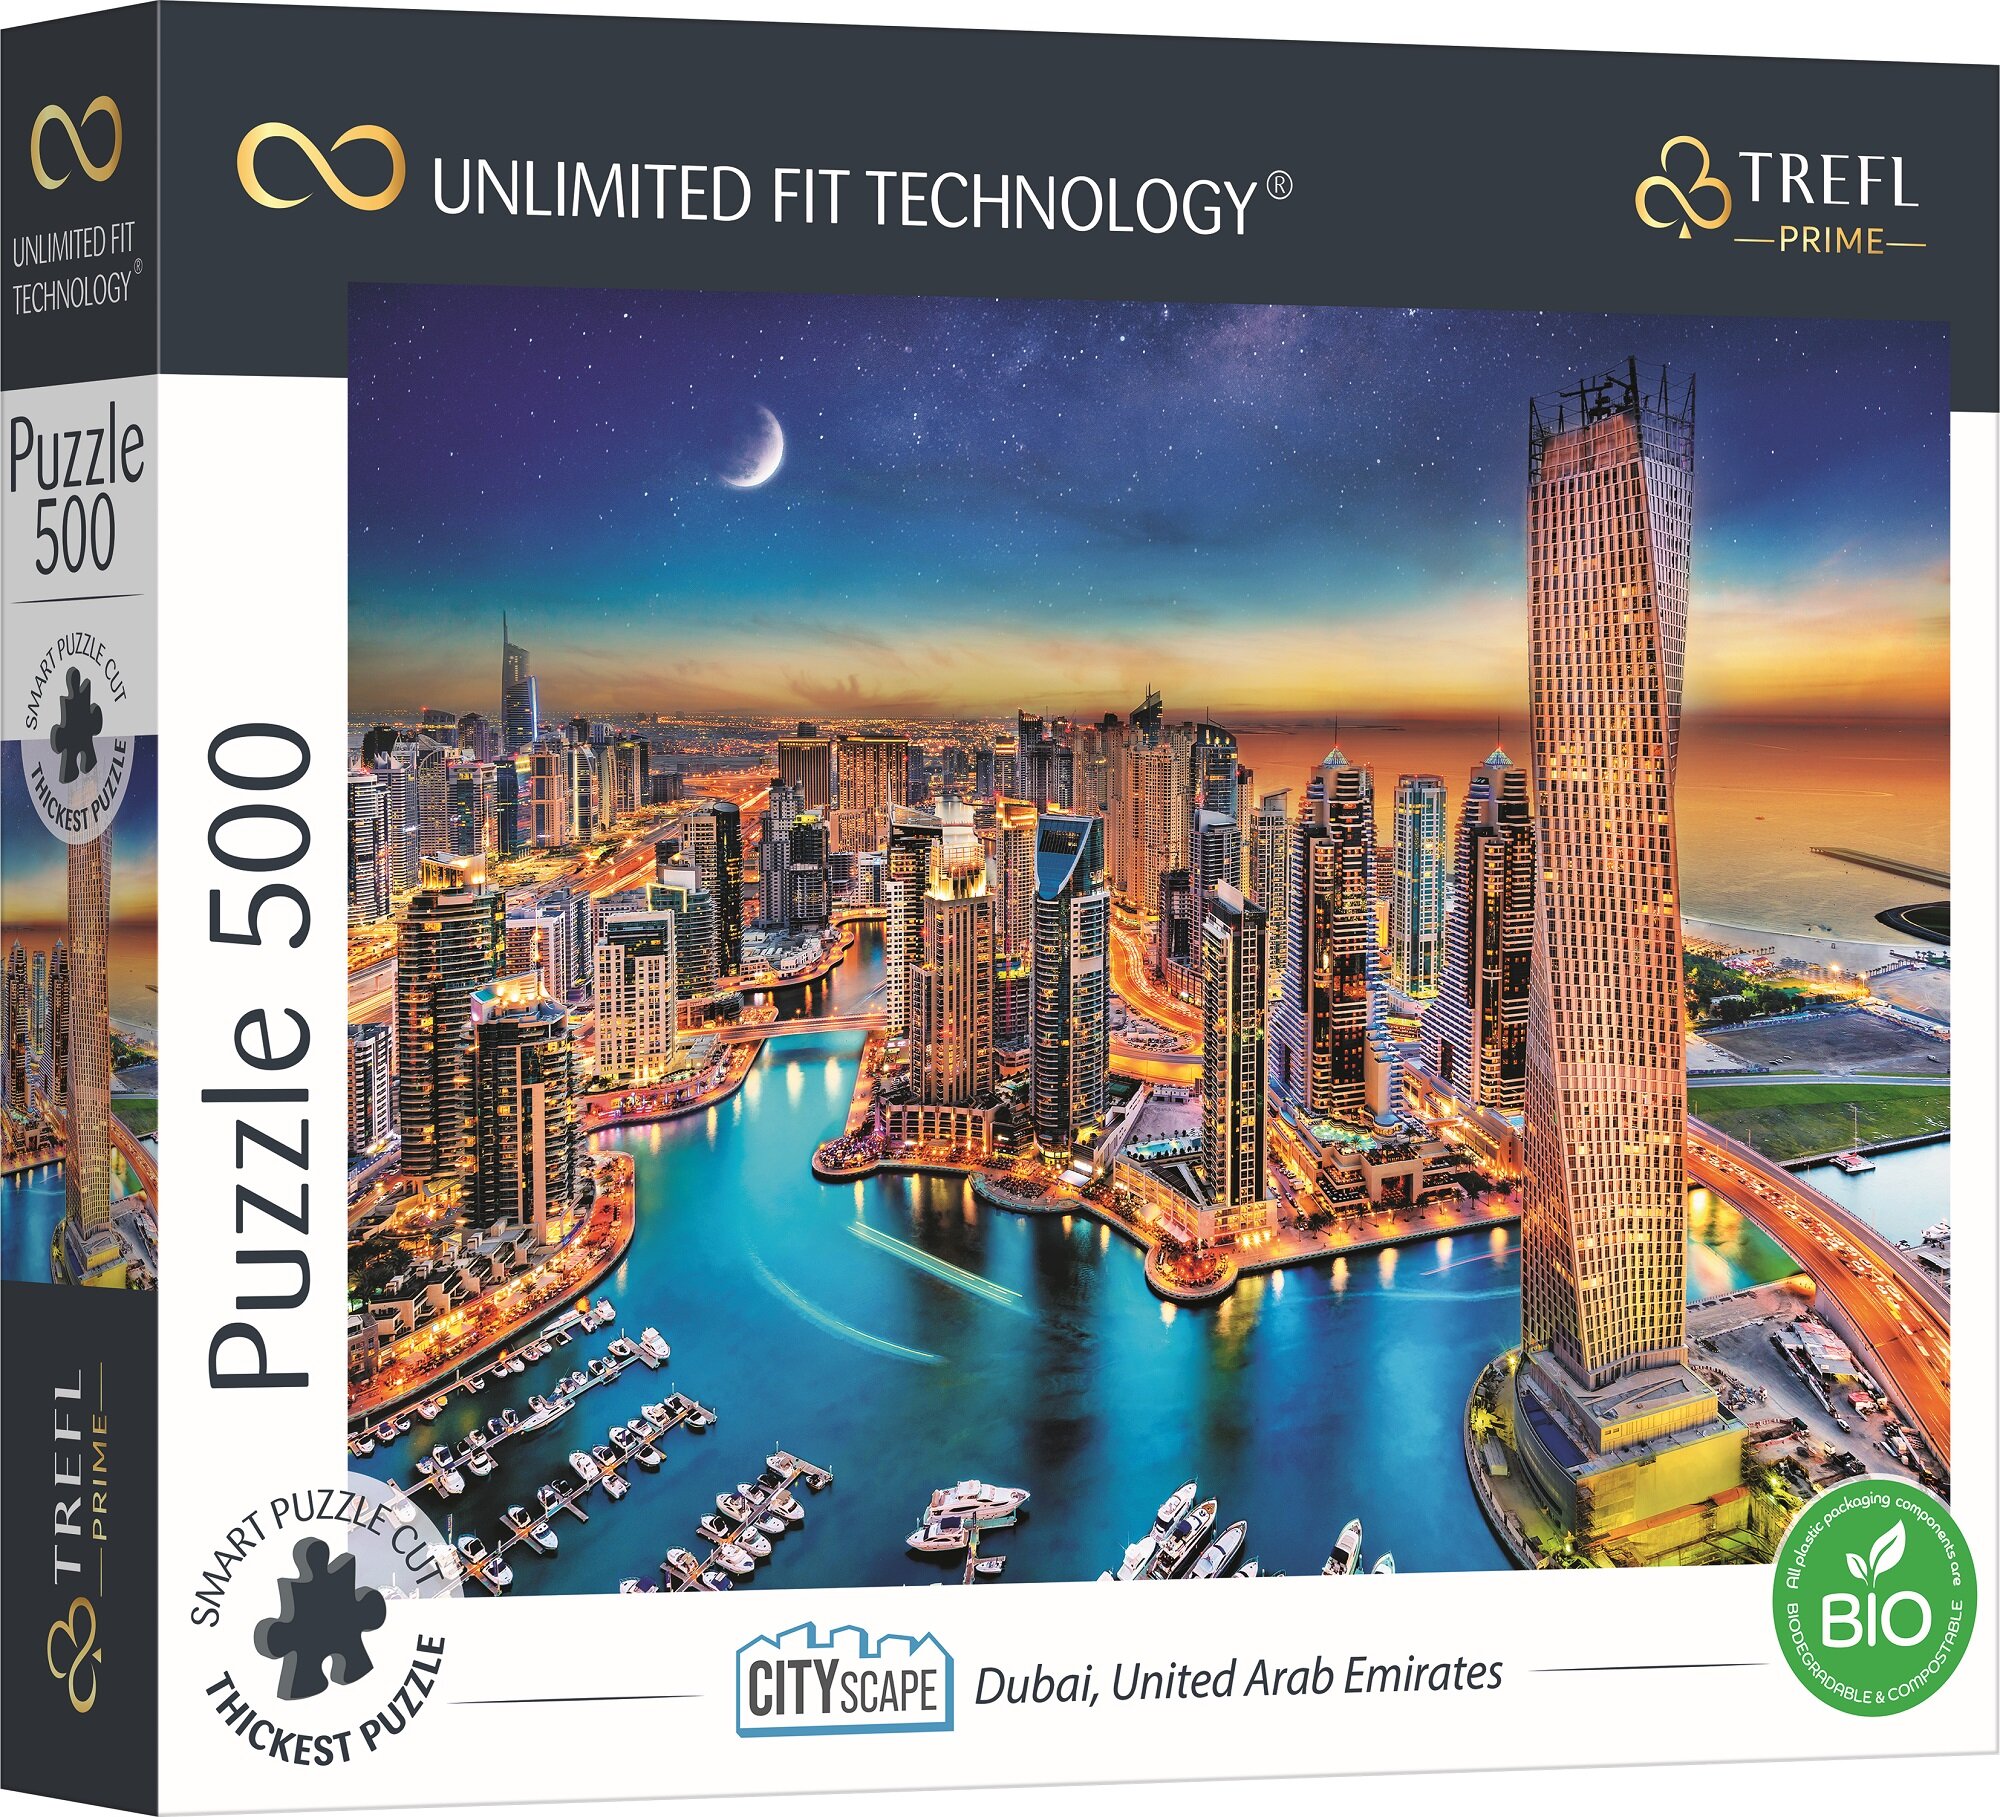 🧩 Trefl Prime Puzzle - Unlimited Fit Technology EN 15s. 